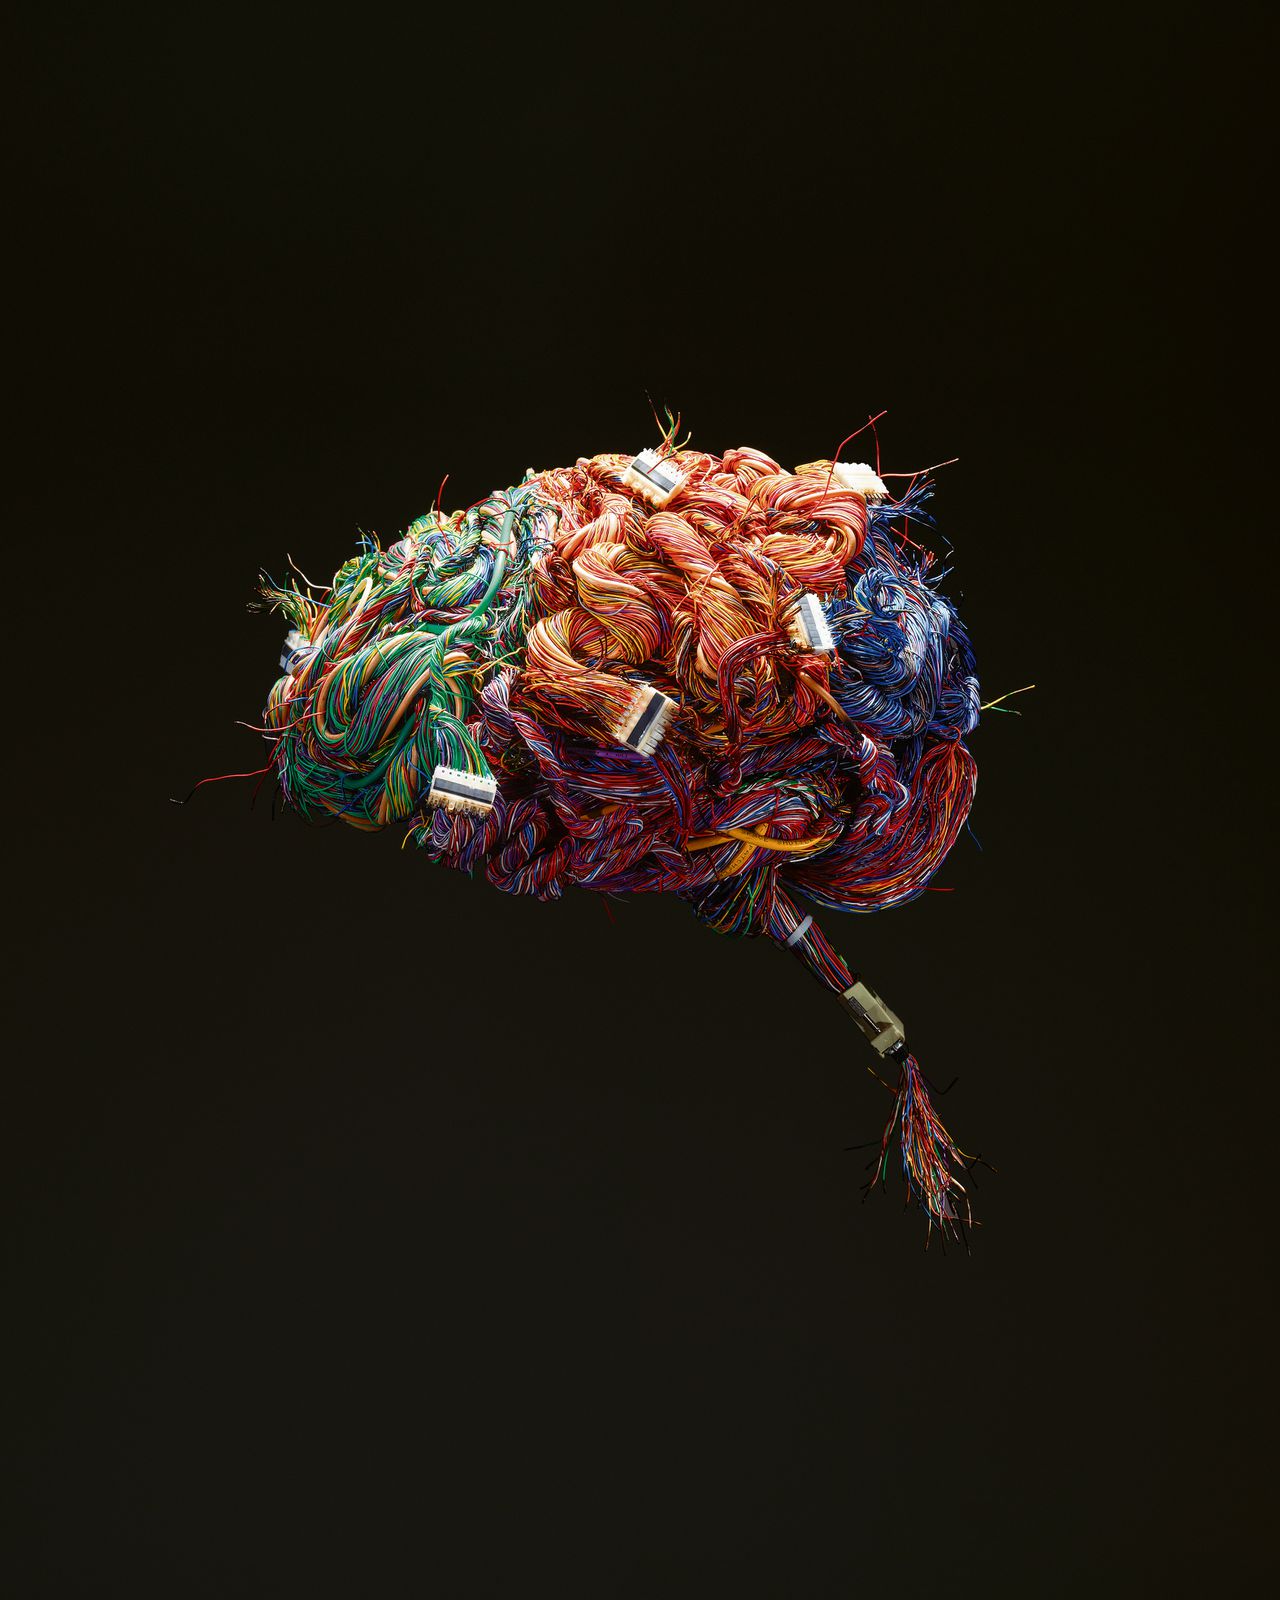 Een model van de menselijke hersenen, gemaakt van draden en stekkers.